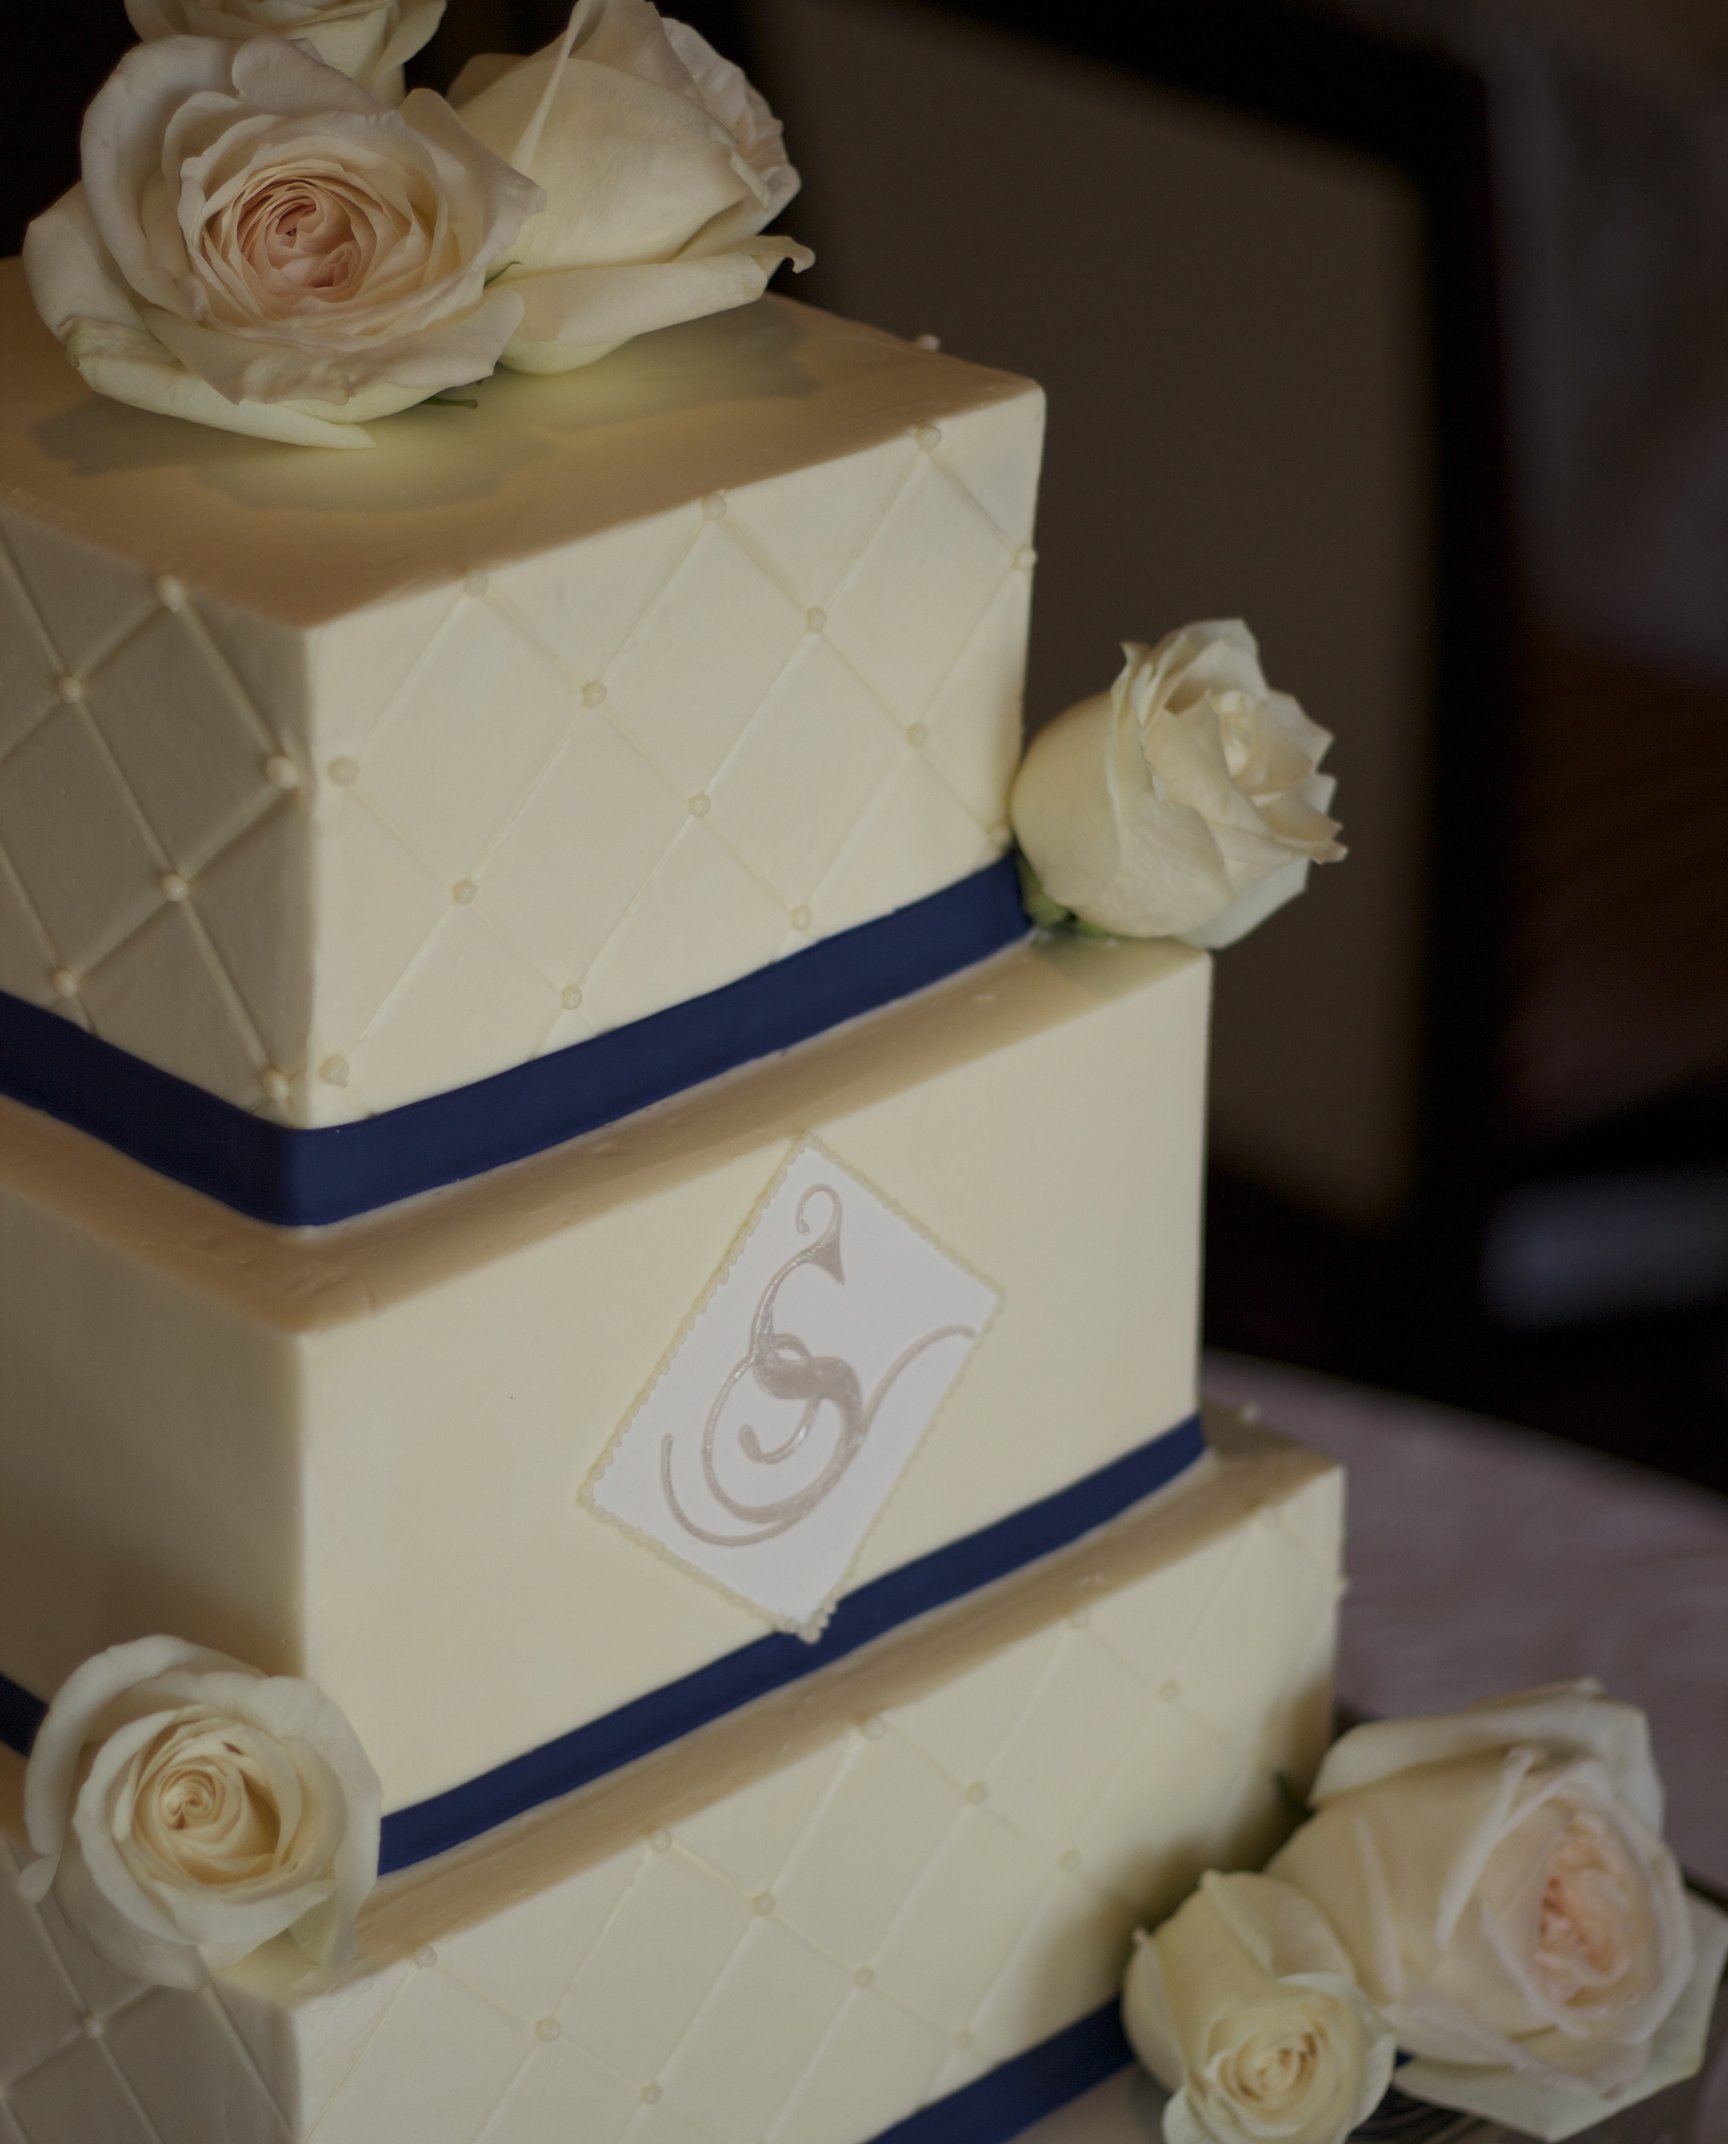 52 Gorgeous Square Wedding Cake Ideas - Weddingomania